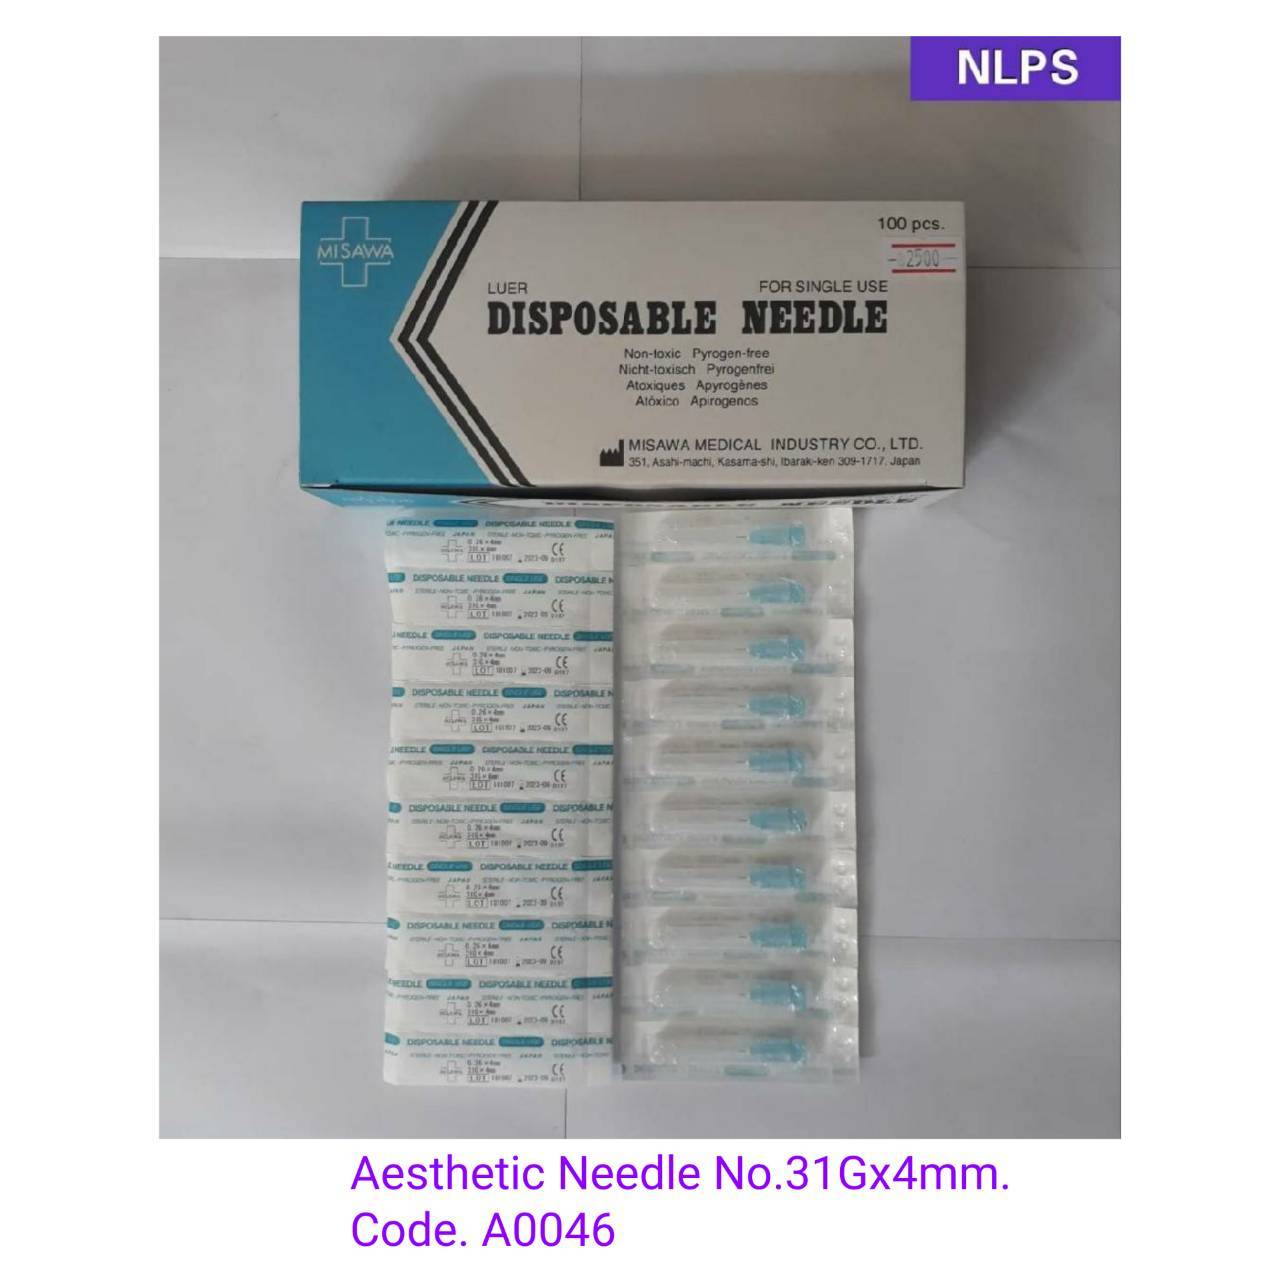 Aesthetic Needle No. 31Gx4 mm